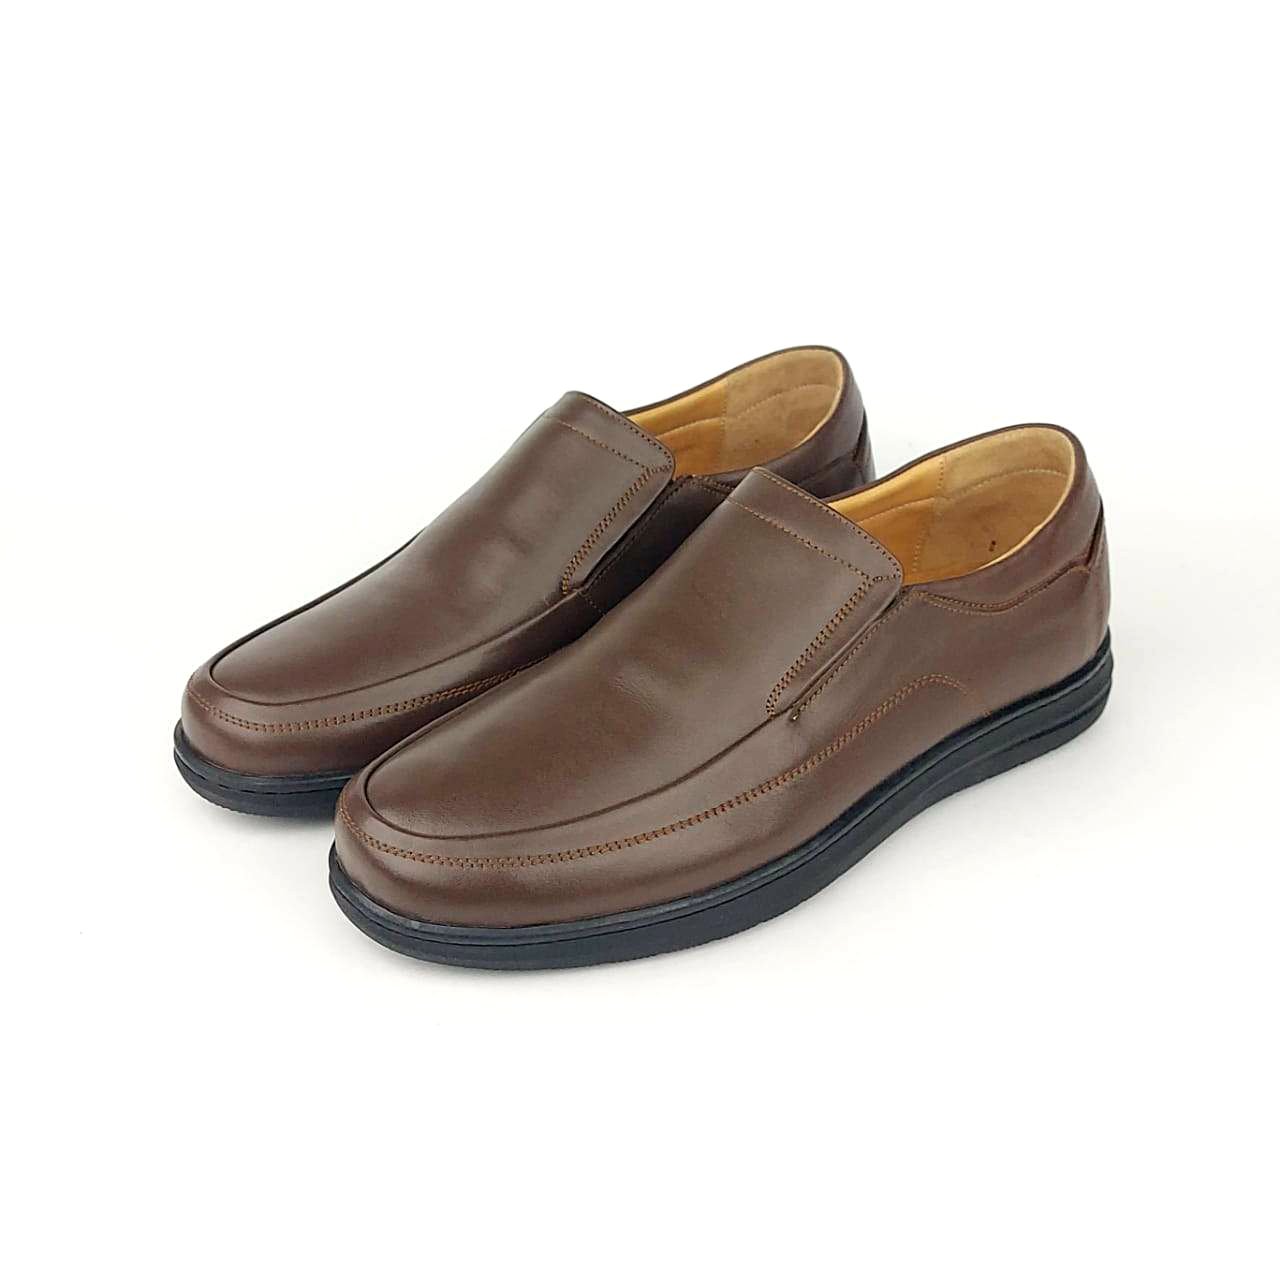 2041 Chaussure cuir marron - VOLZAK